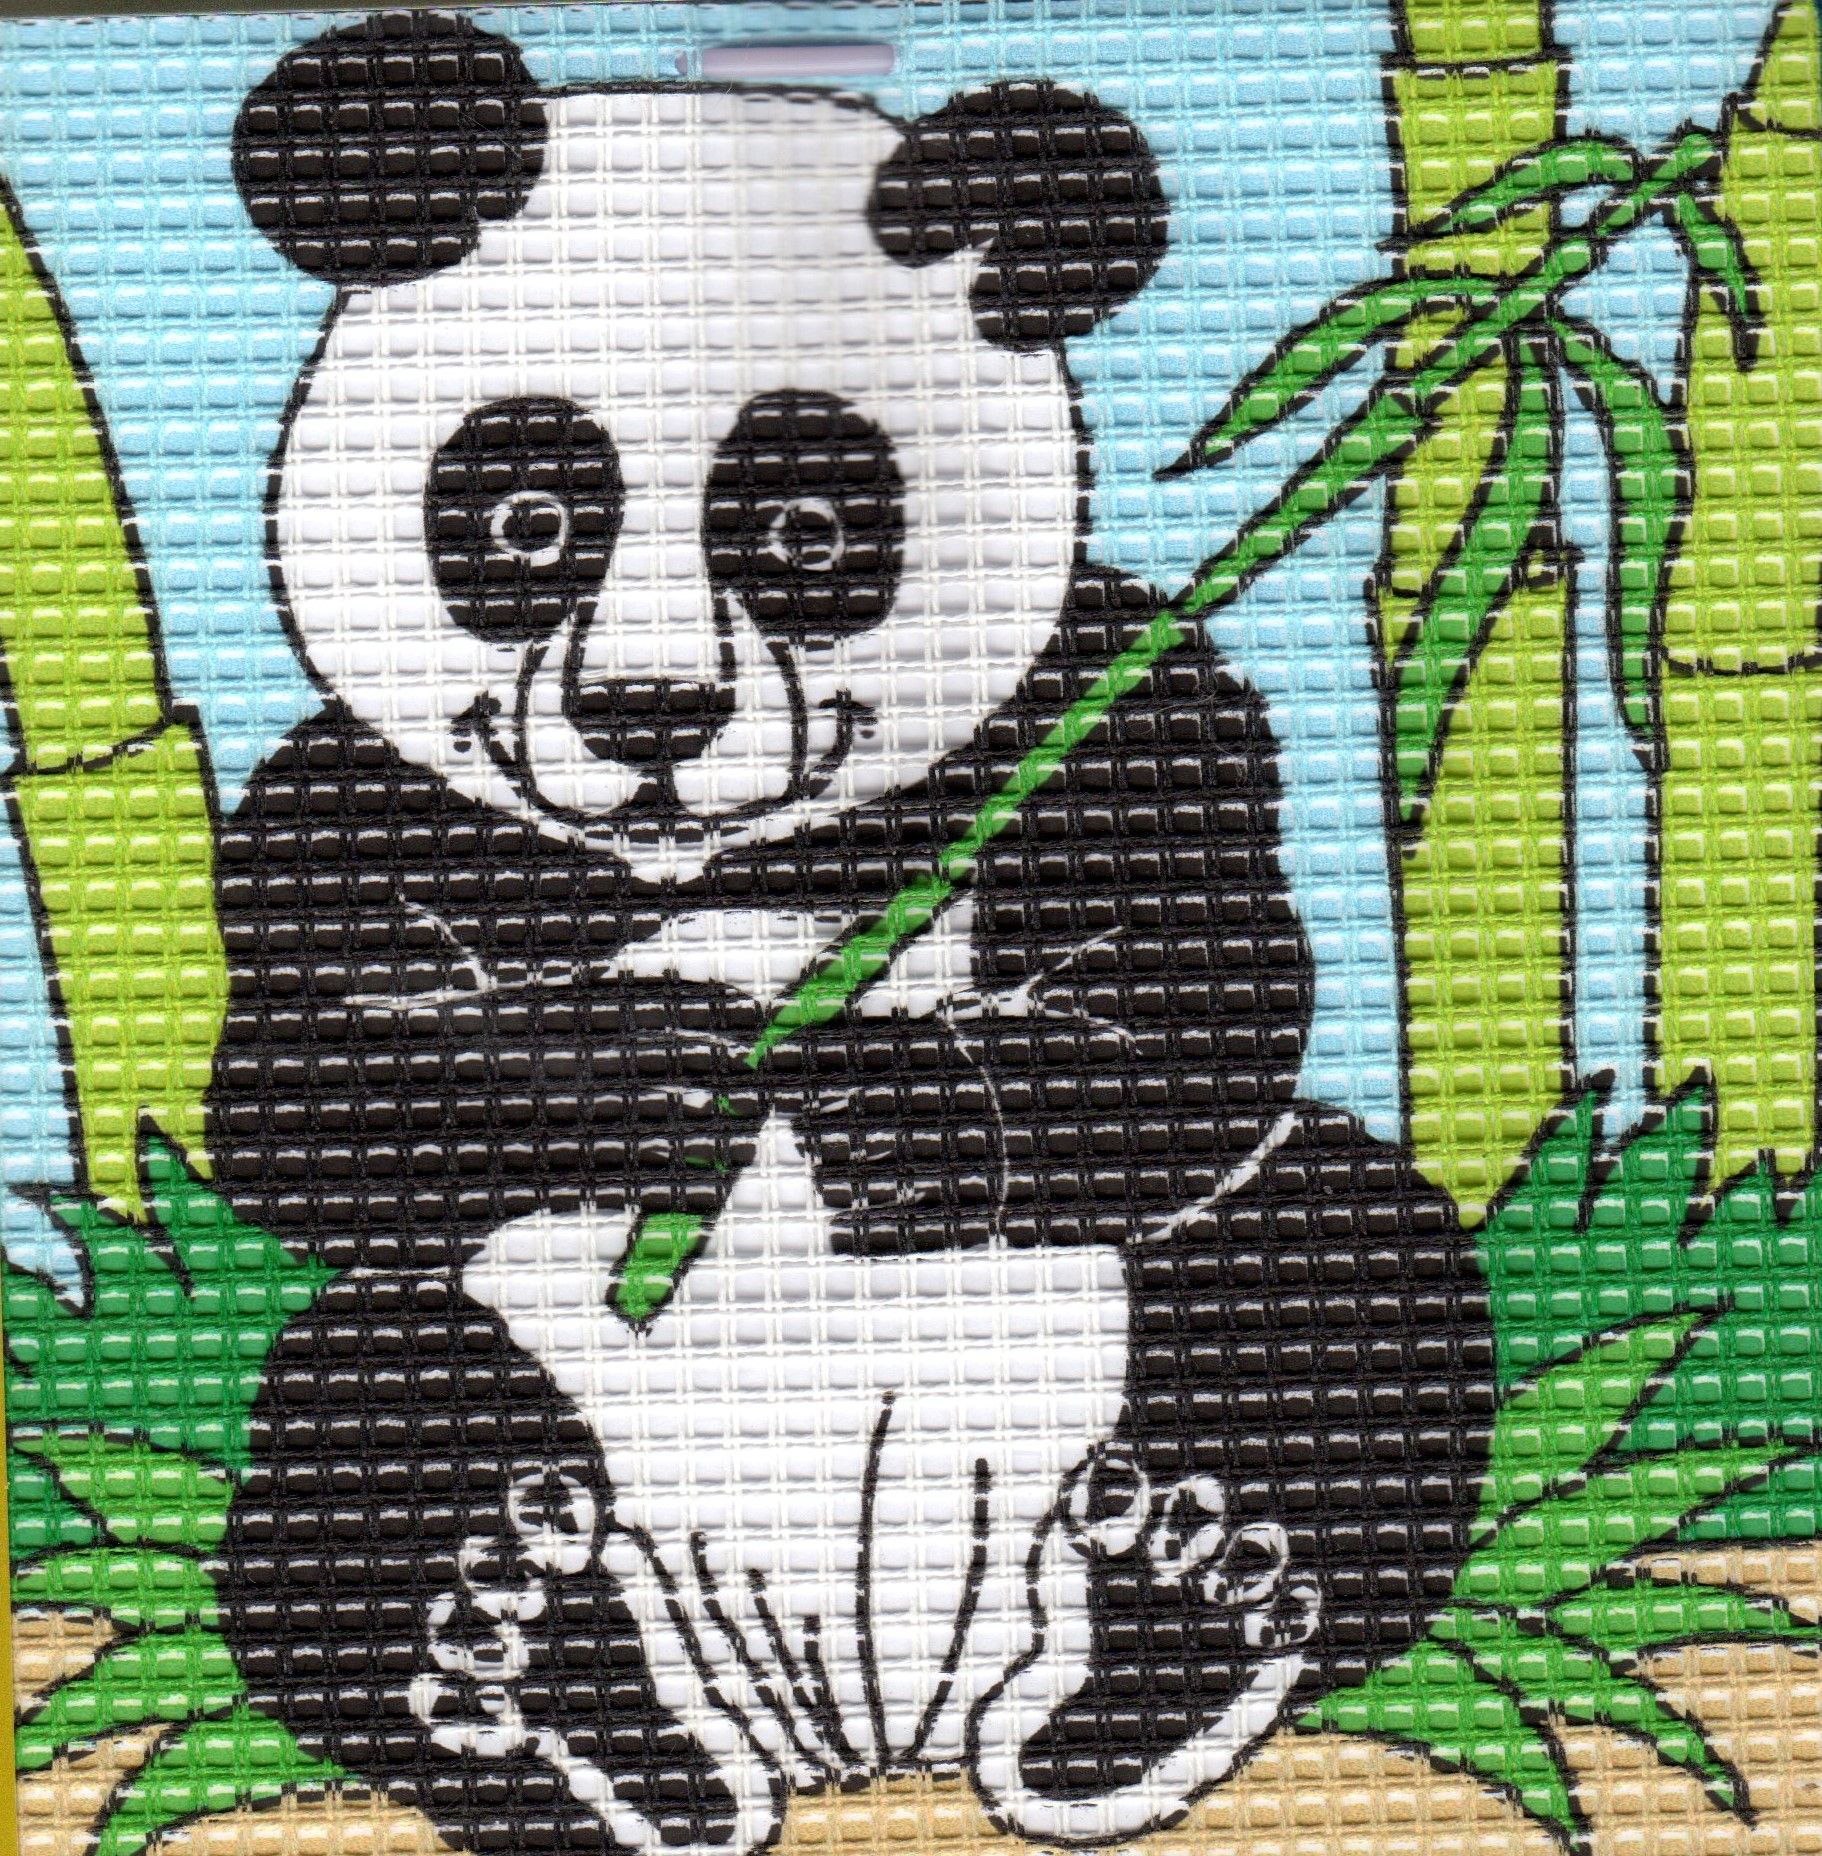 Kit Canevas complet Le Panda 16 x 16 Enfant gros trous